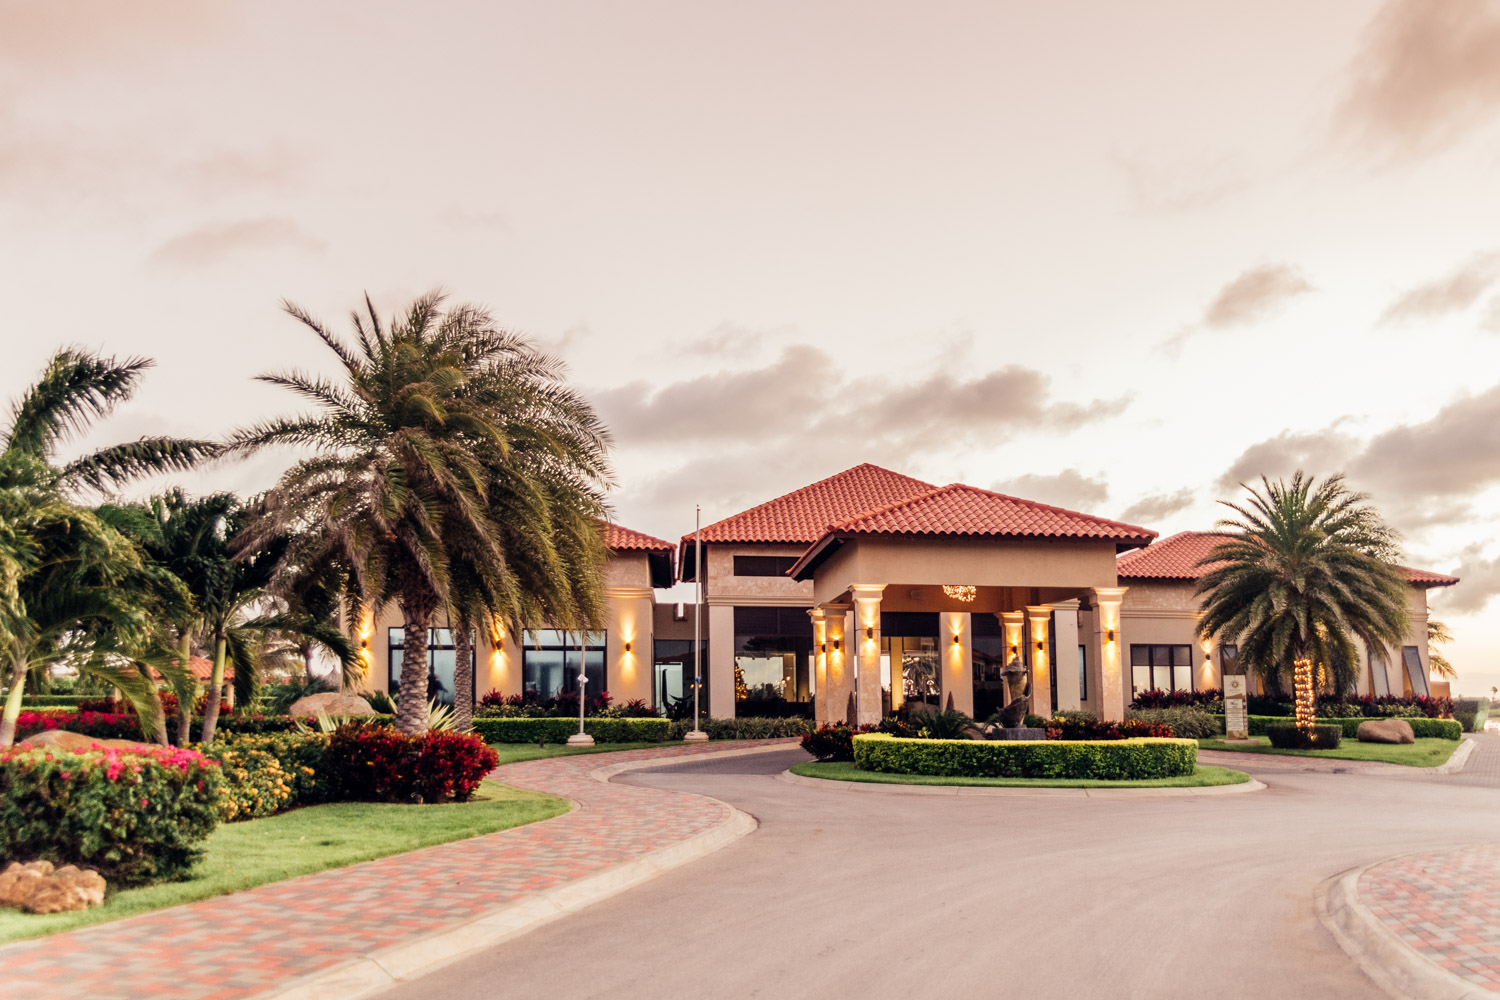 Gold Coast Aruba | Aruba luxury villas